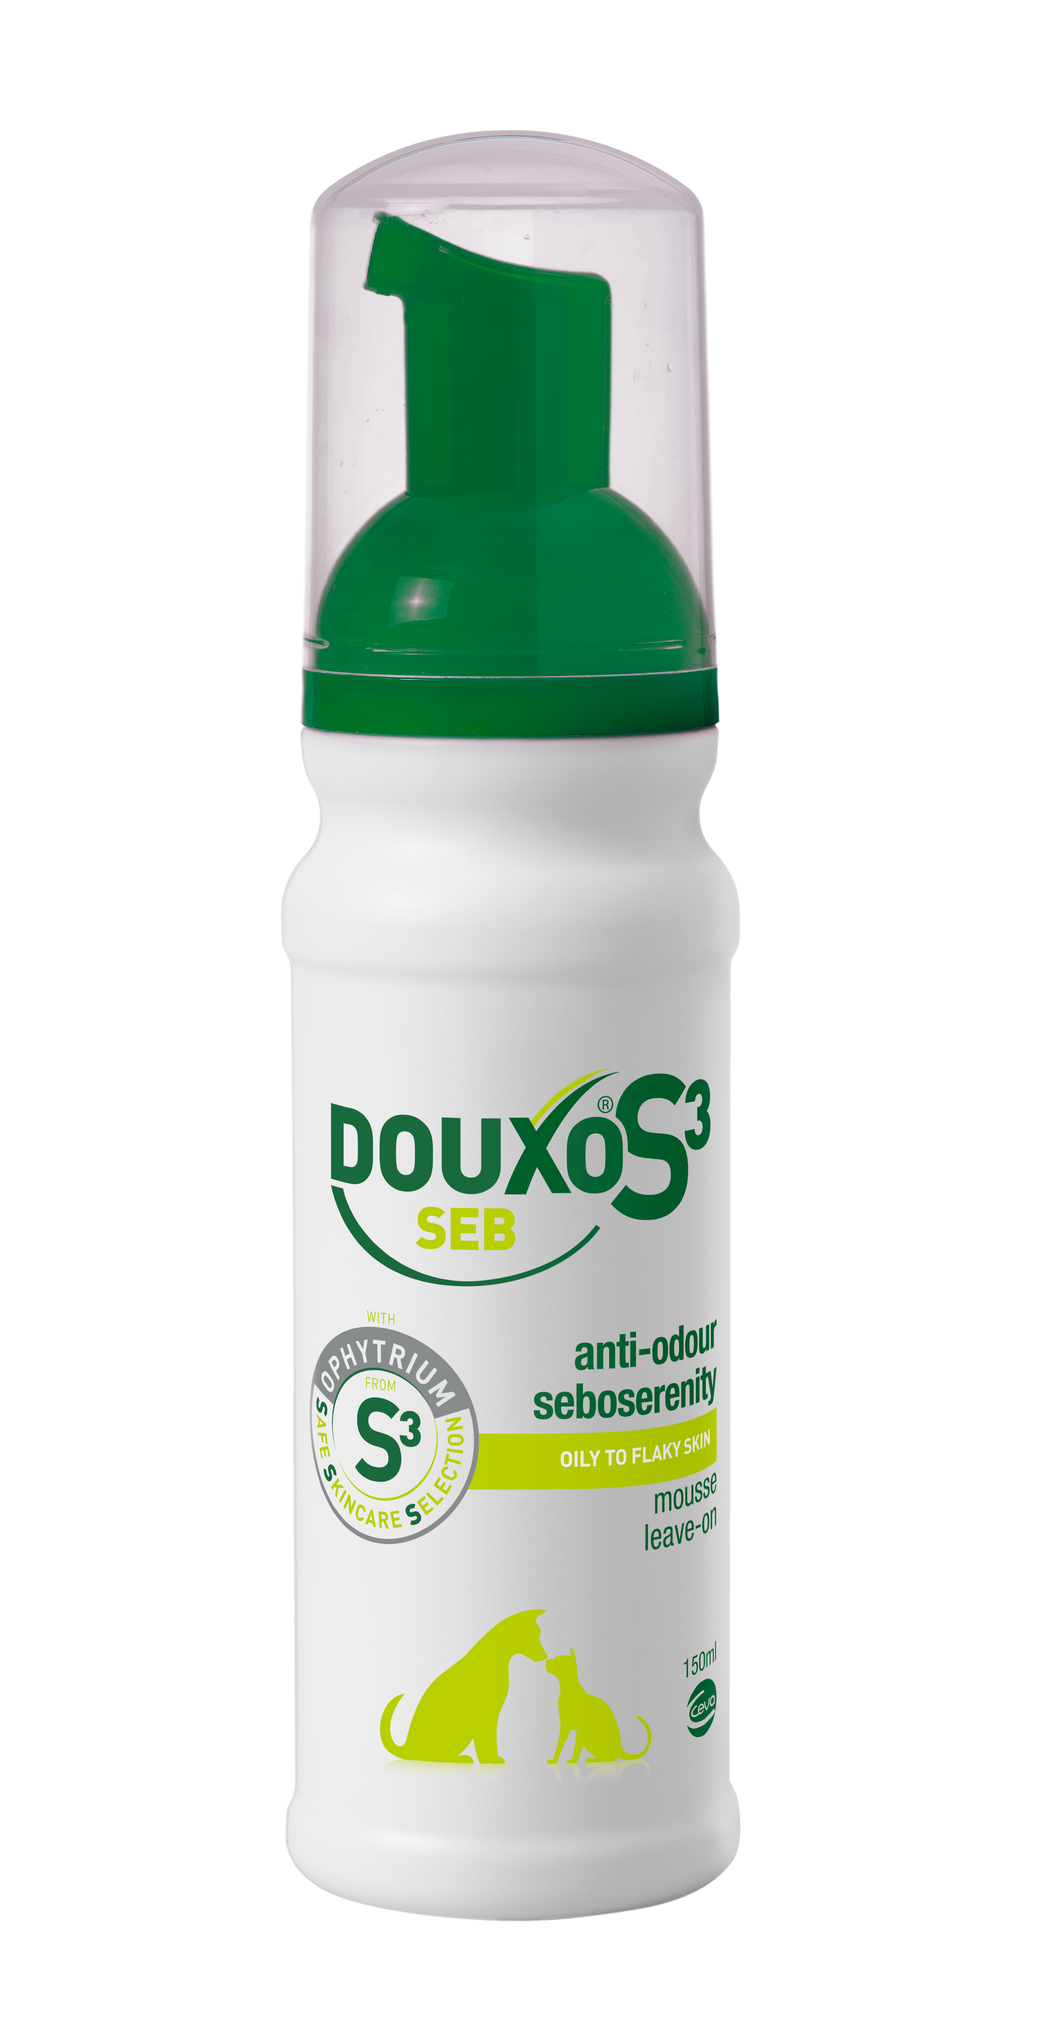 DOUXO S3 SEB - Pet Health Direct